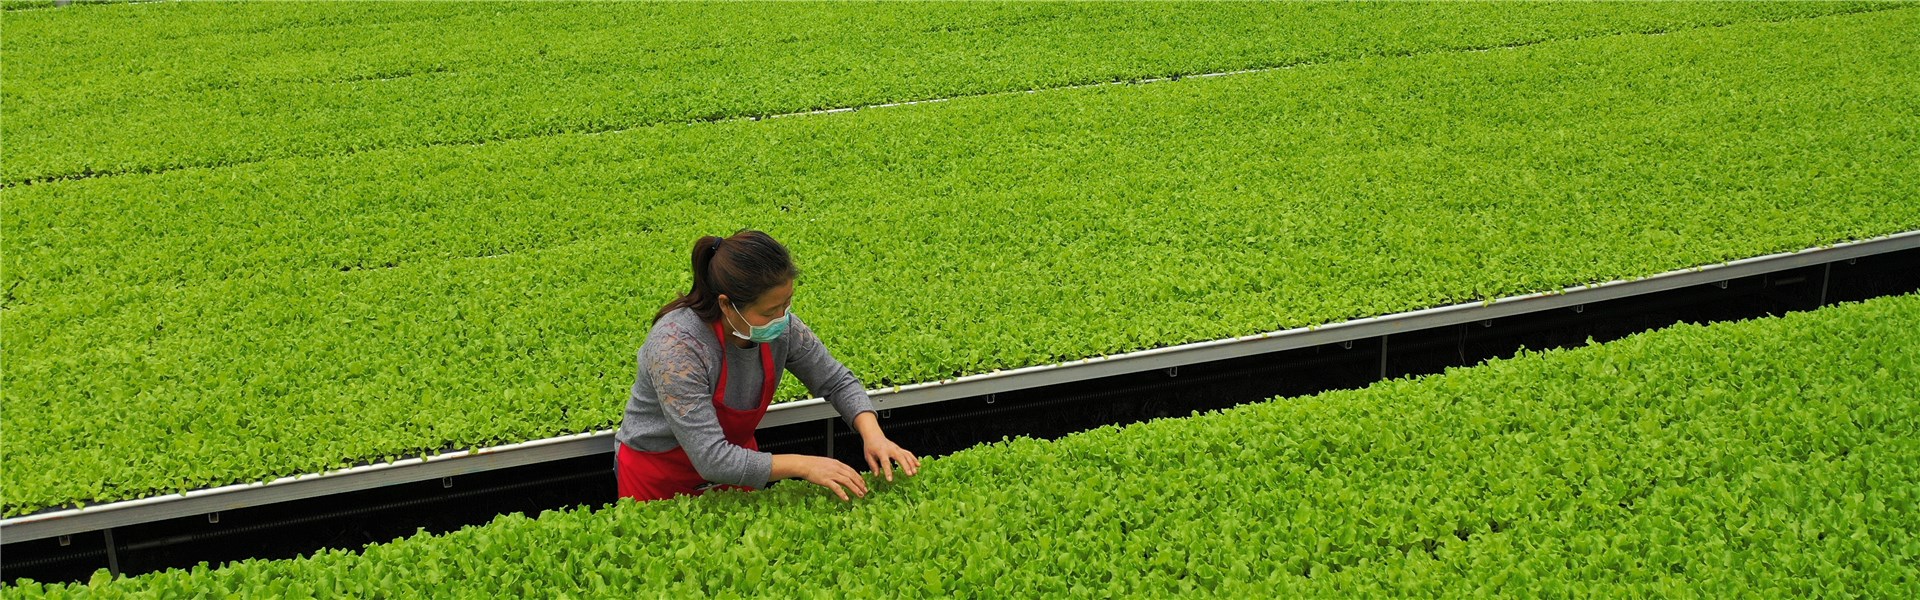 新疆：加快发展设施蔬菜保供应